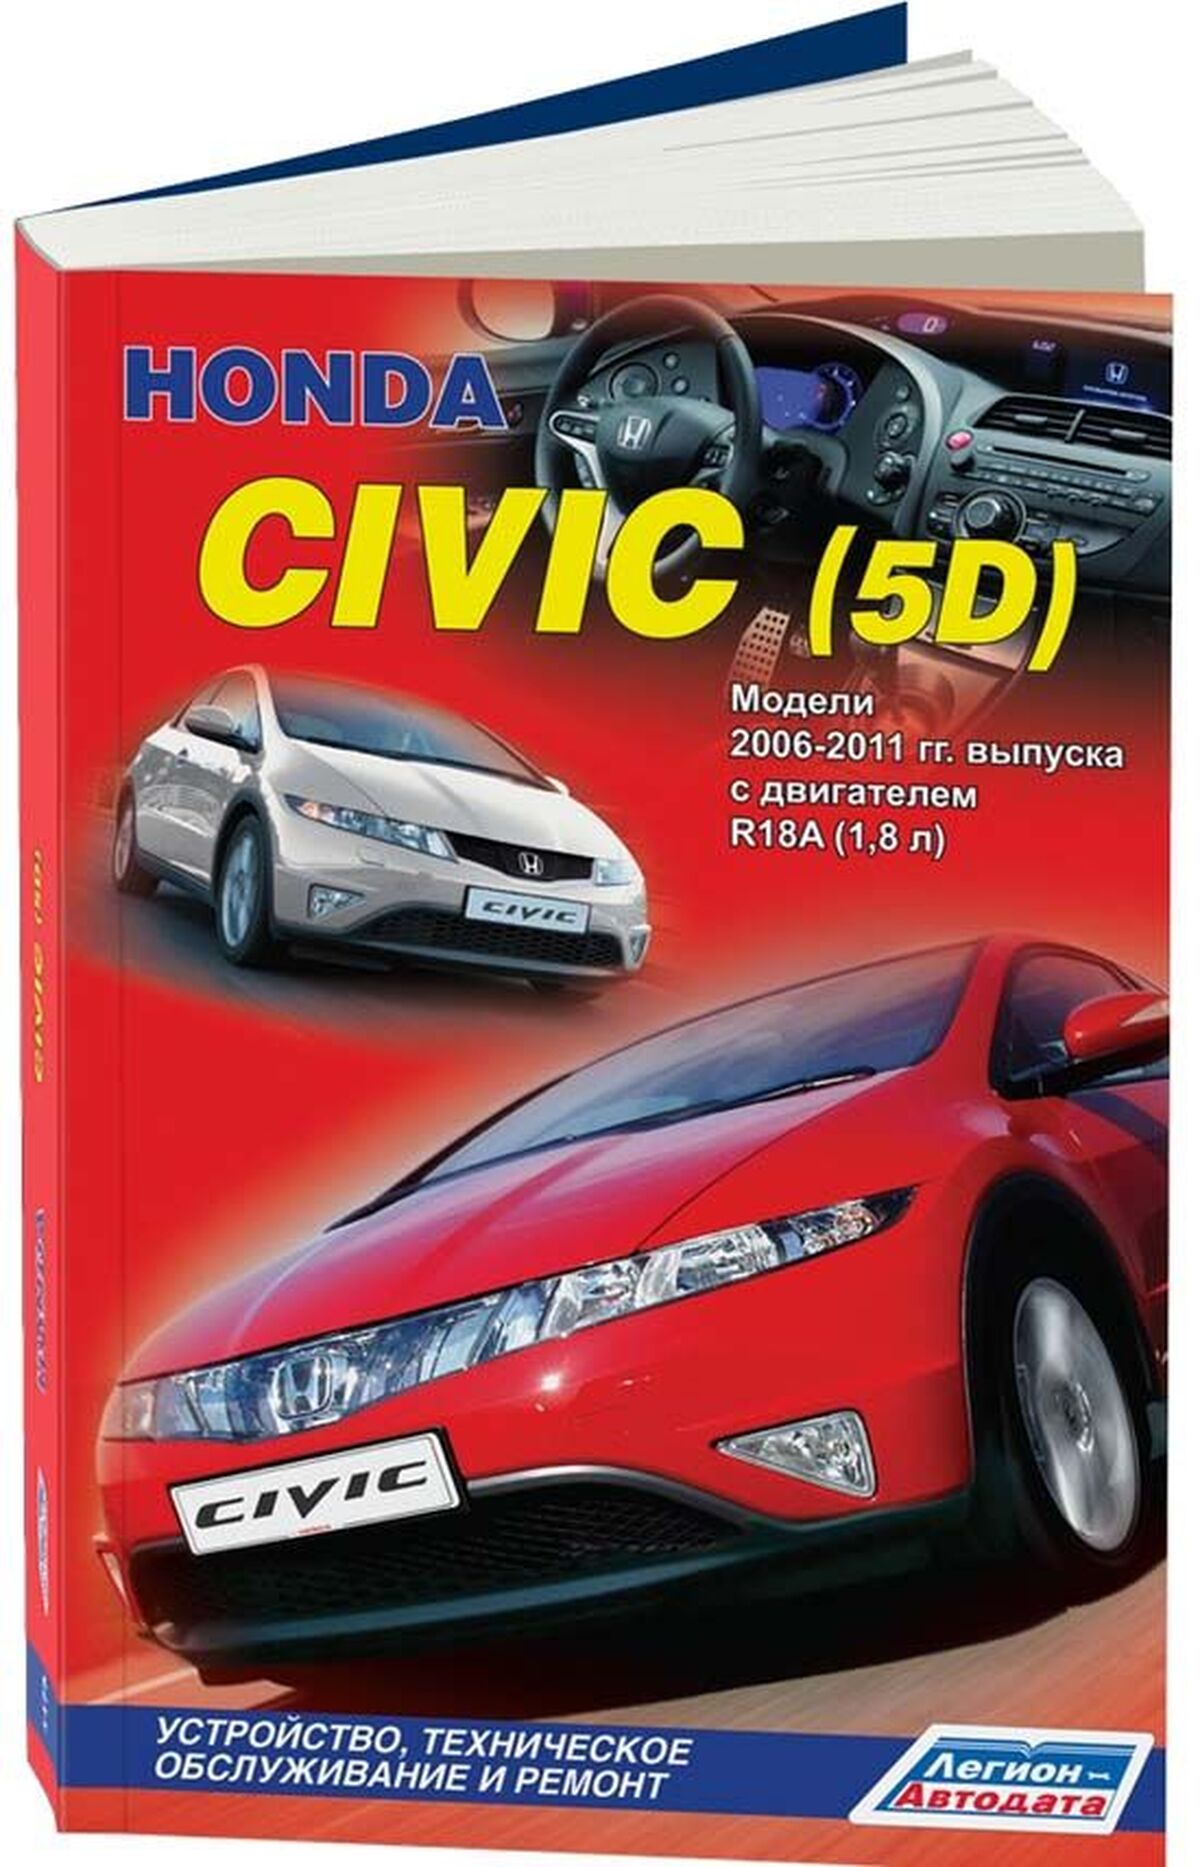 Книга: HONDA CIVIC (5D) (б) 2006-2011 г.в., рем., экспл., то | Легион-Aвтодата